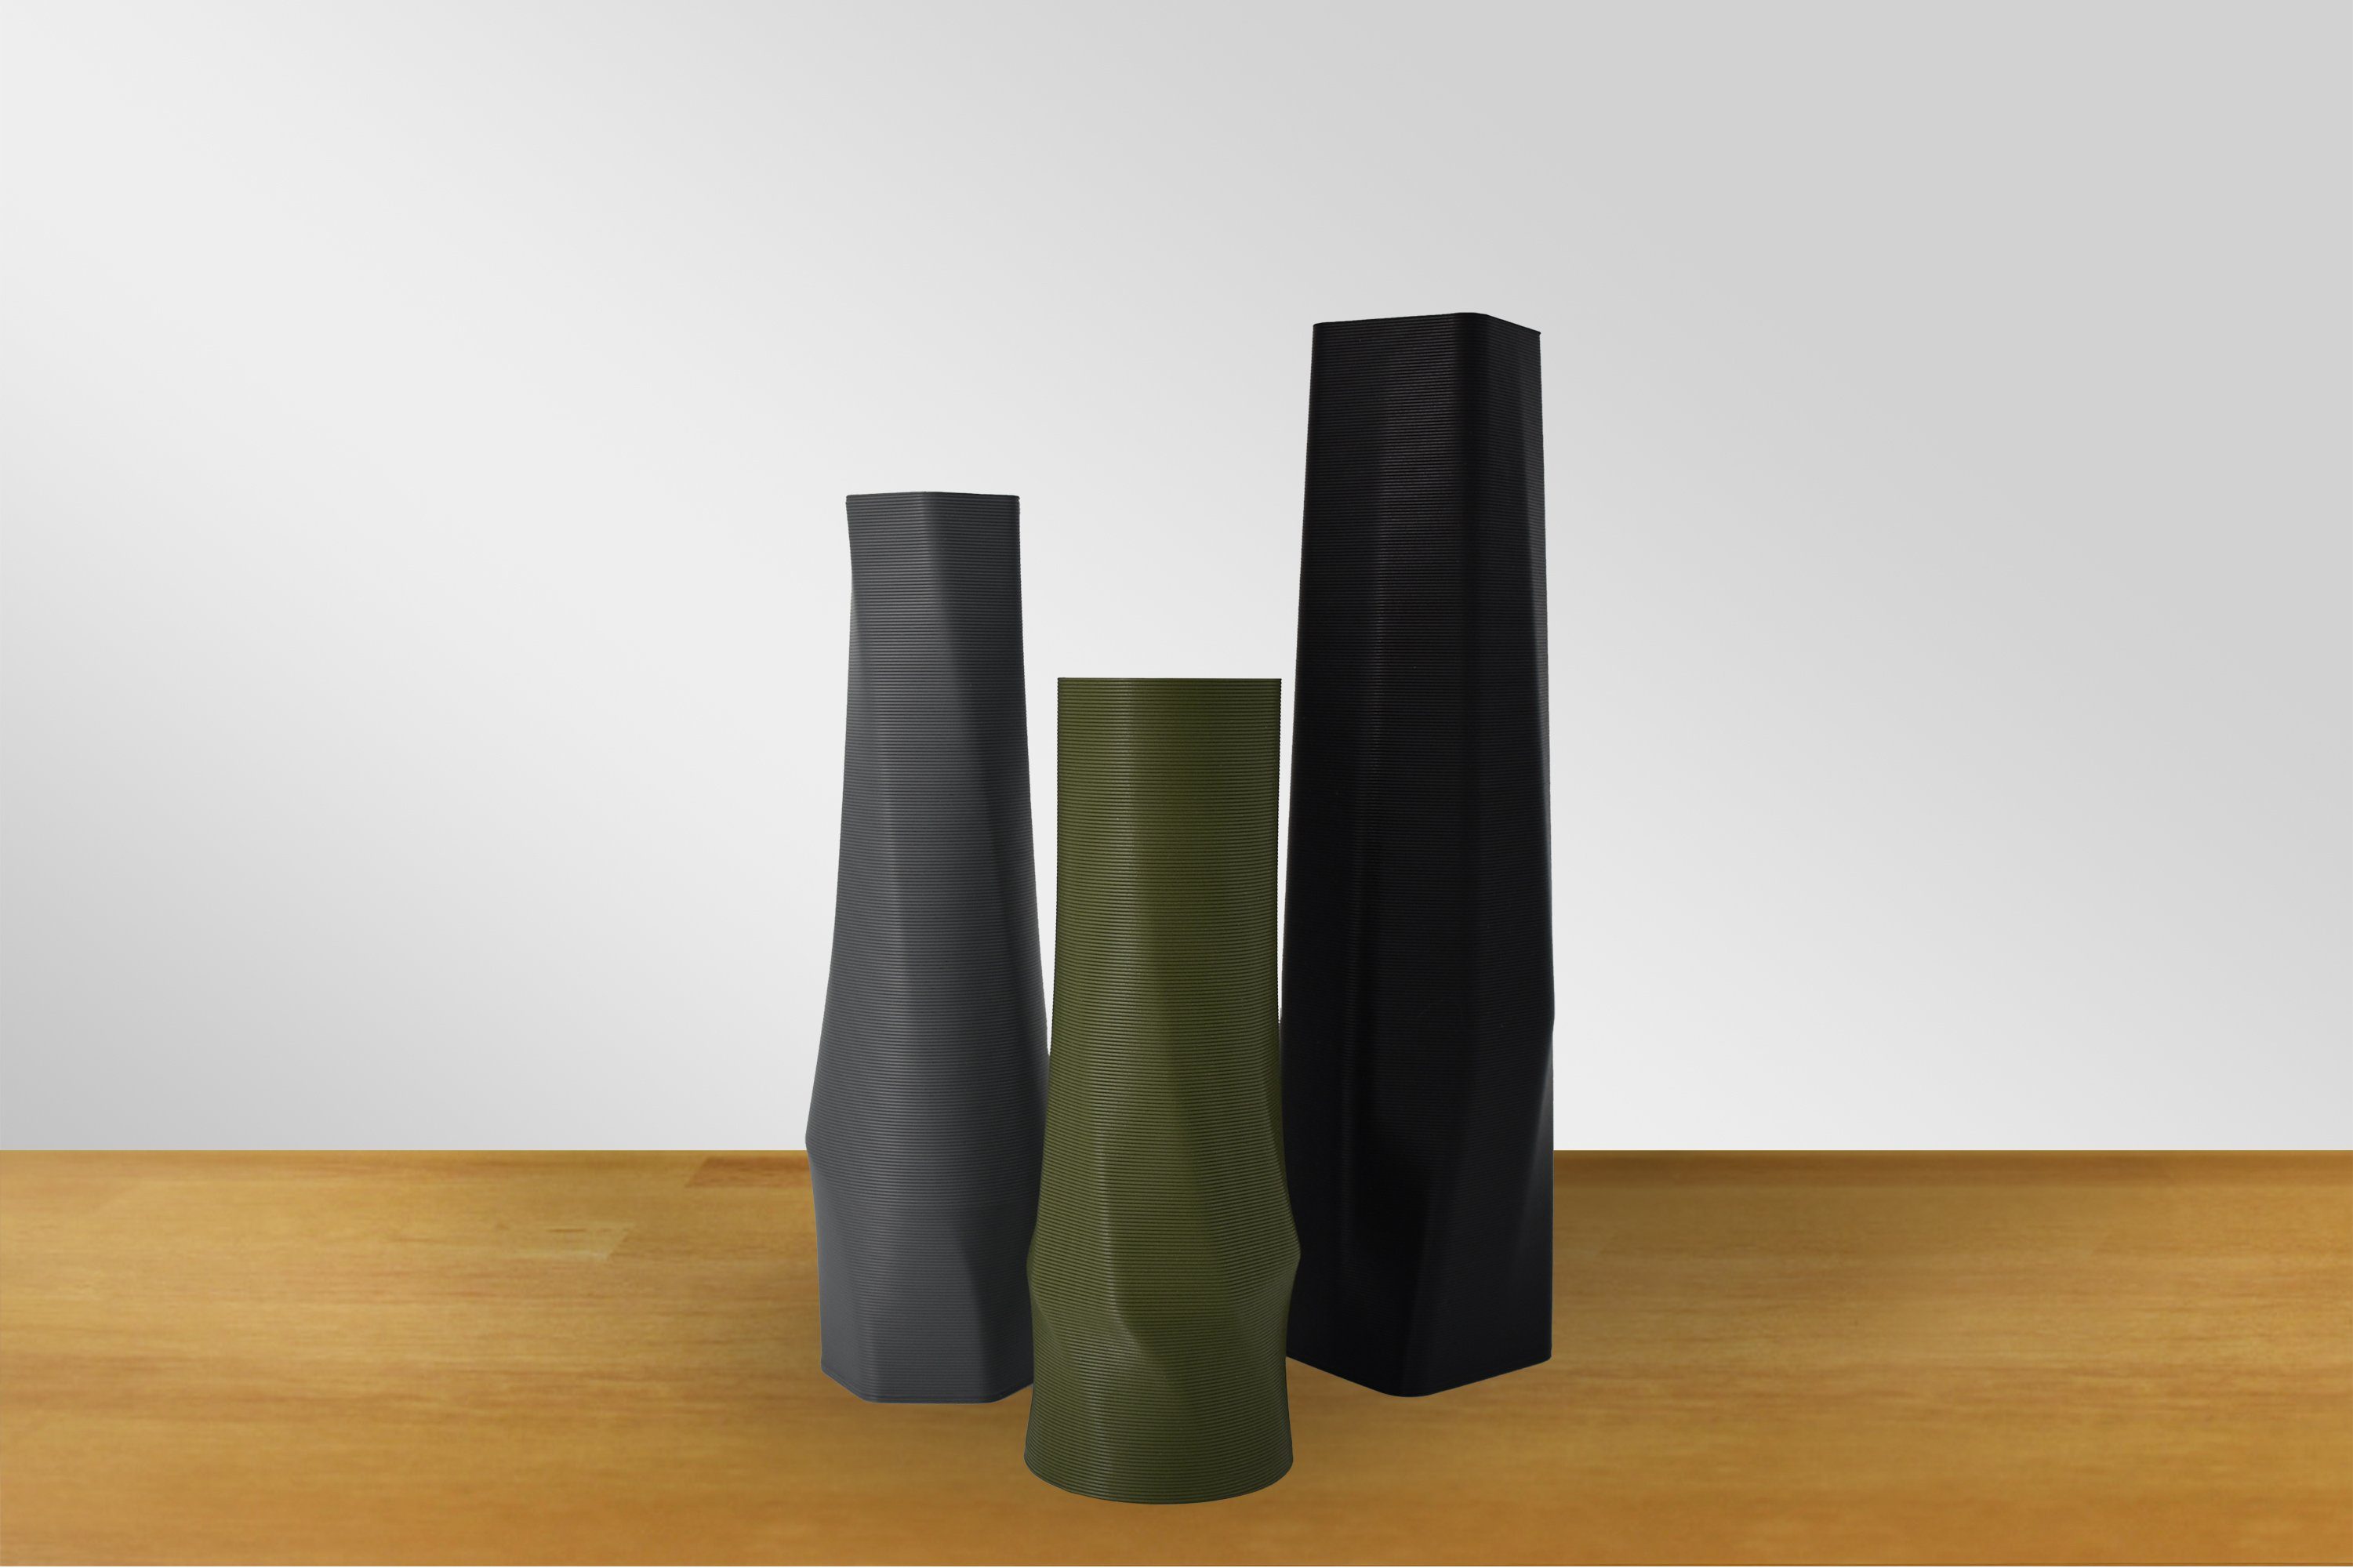 3D-Druck 3D Struktur Farben, hexagon (Einzelmodell, Dekovase Hellgrau - Shapes viele (basic), vase 100% (Rillung) the Vasen, Vase), des Materials Leichte - 1 innerhalb Decorations Wasserdicht;